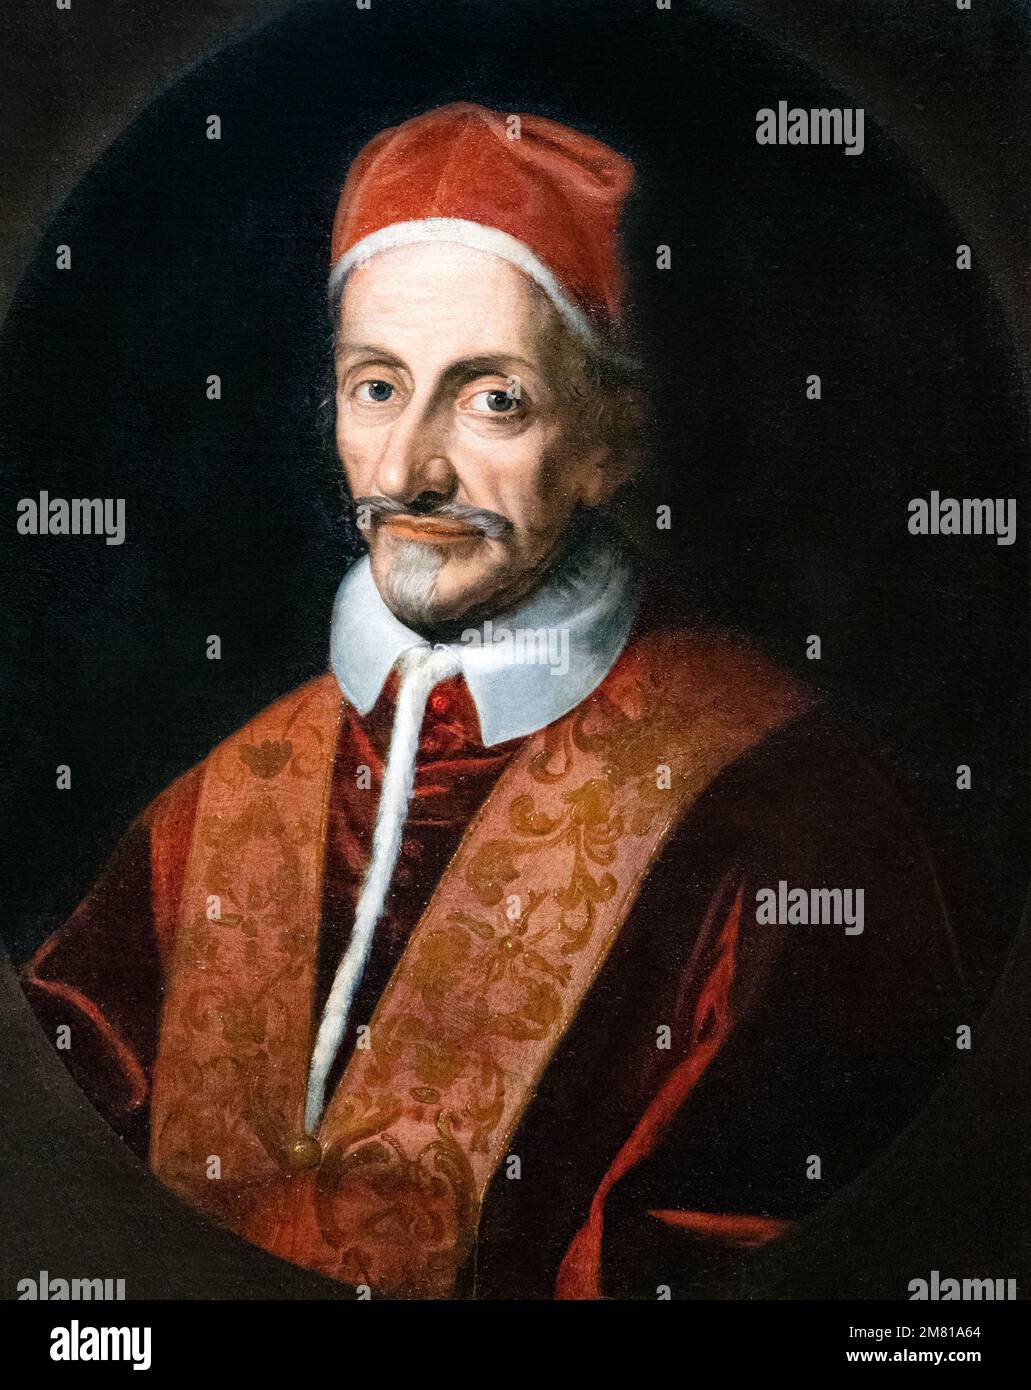 Kunst des 17. Jahrhunderts; Ölgemälde Portrait von Papst Innocent XI, gemalt in Italien, ca. 1680, Künstler unbekannt; Wawel Castle Museum, Krakau Polen Stockfoto